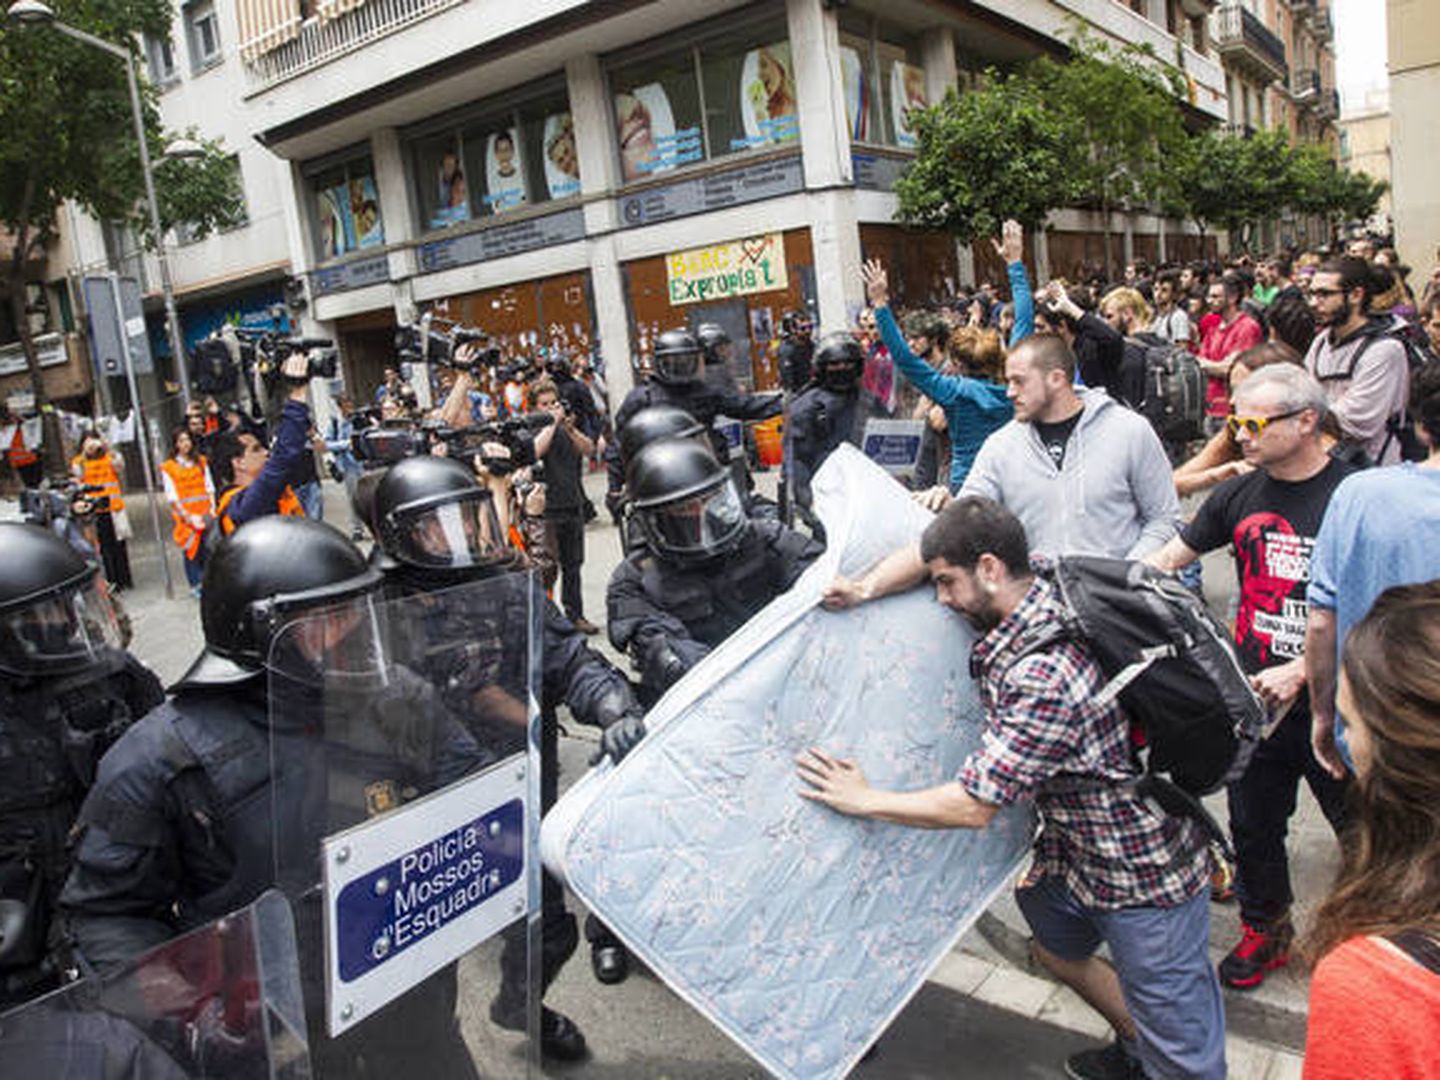 Enfrentamiento entre simpatizantes de la okupación y Mossos en el 'banc expropiat' de Barcelona. (EFE)